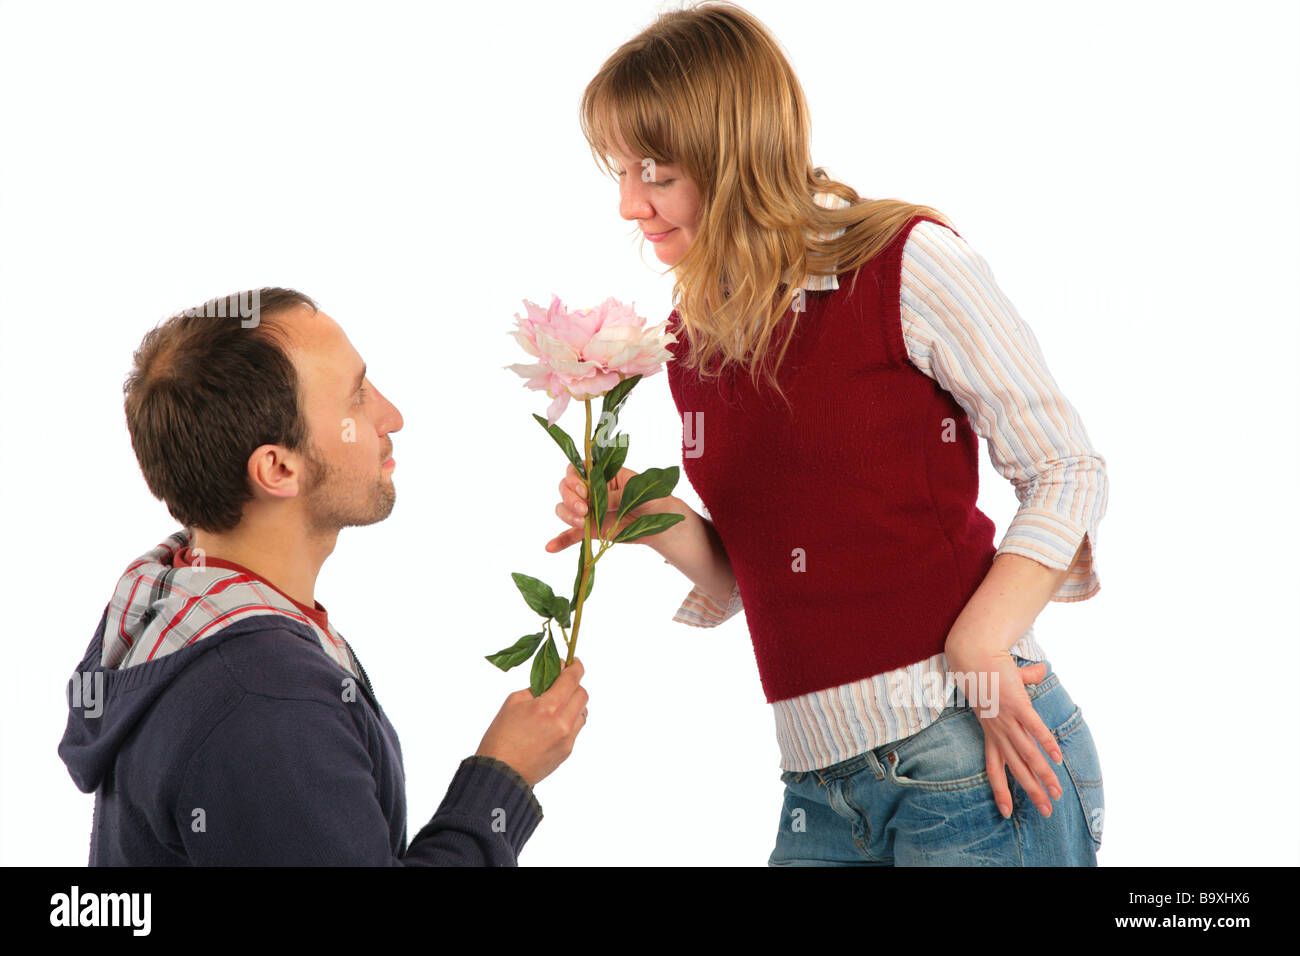 Сонник мужчина подарил. Мужчина дарит цветы женщине. Человек дает цветы. Мужчина дарит цветы женщине во сне. Ухажеры дарят цветы.